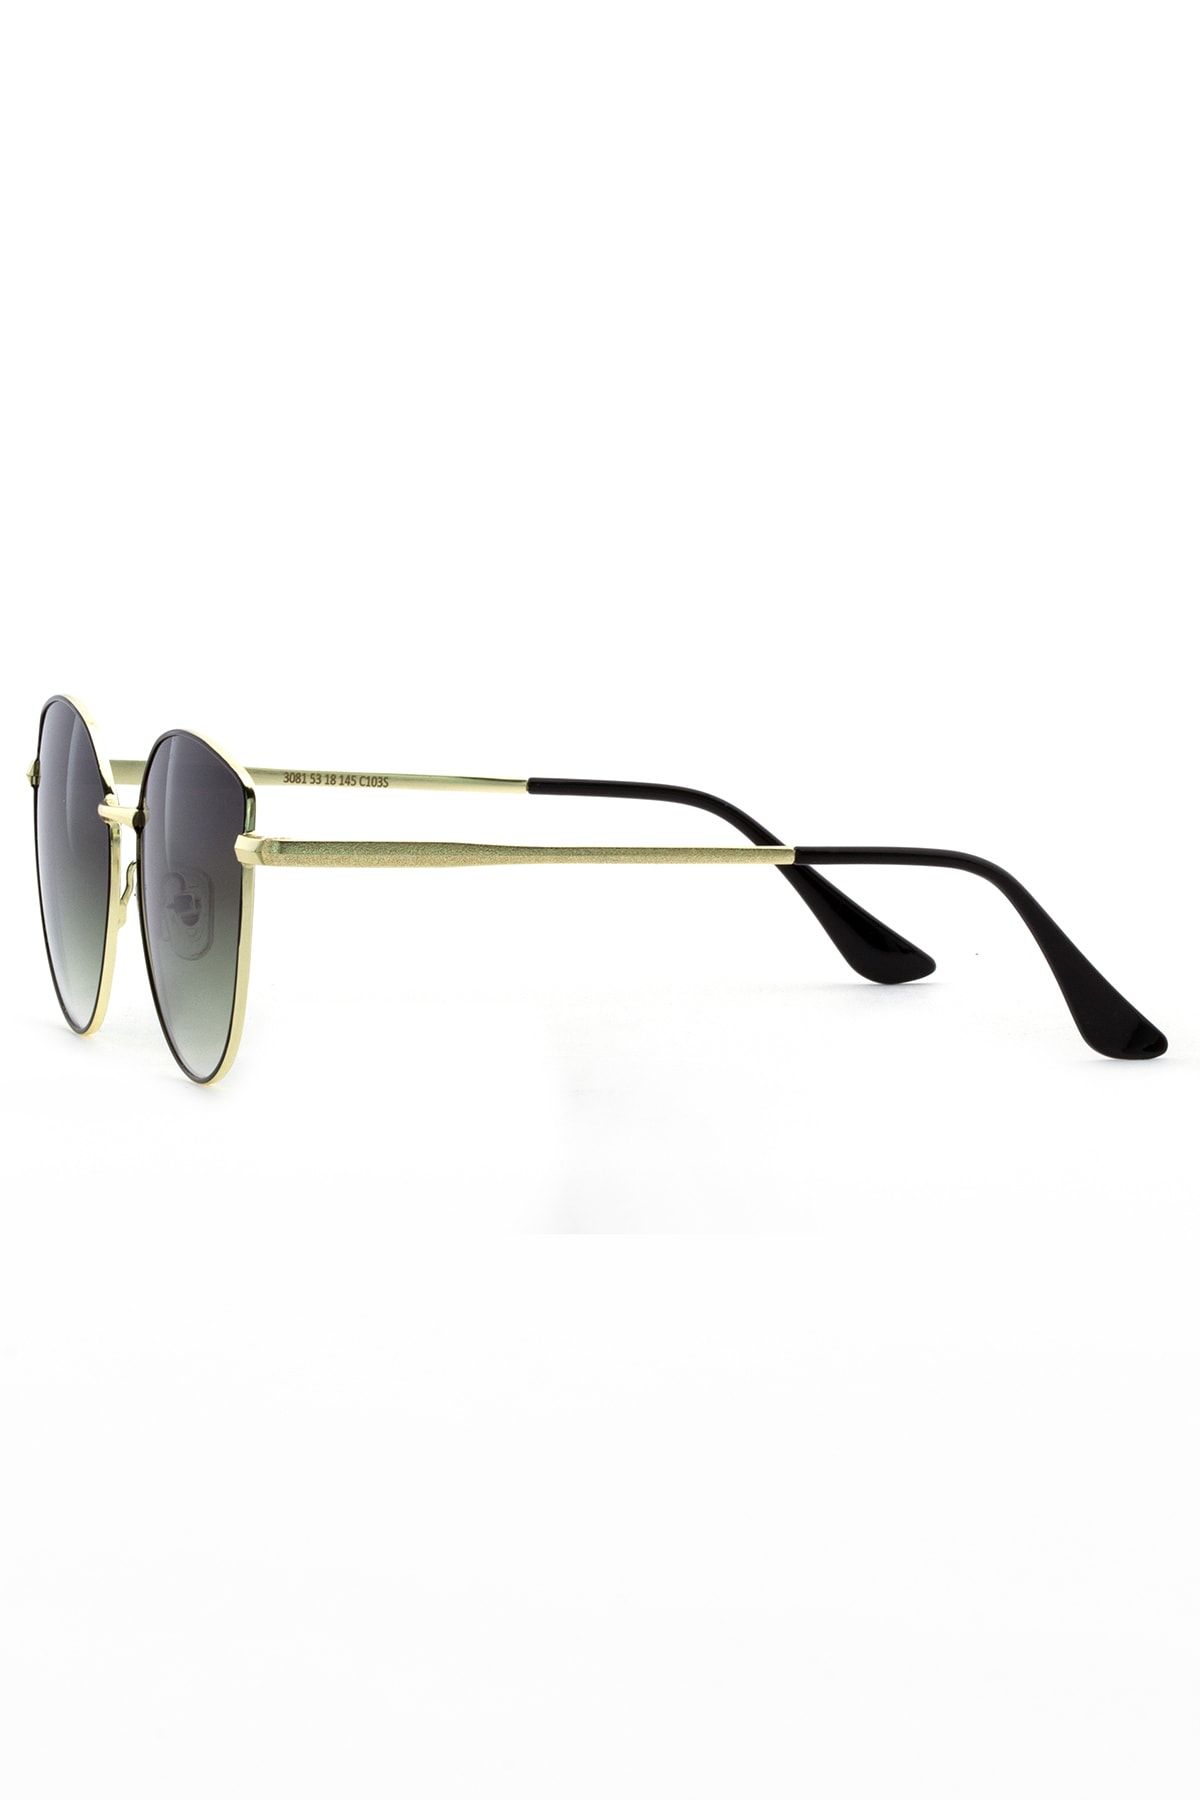 Kappa Metal Luxury Güneş Gözlüğü Kp3081c103-siyah